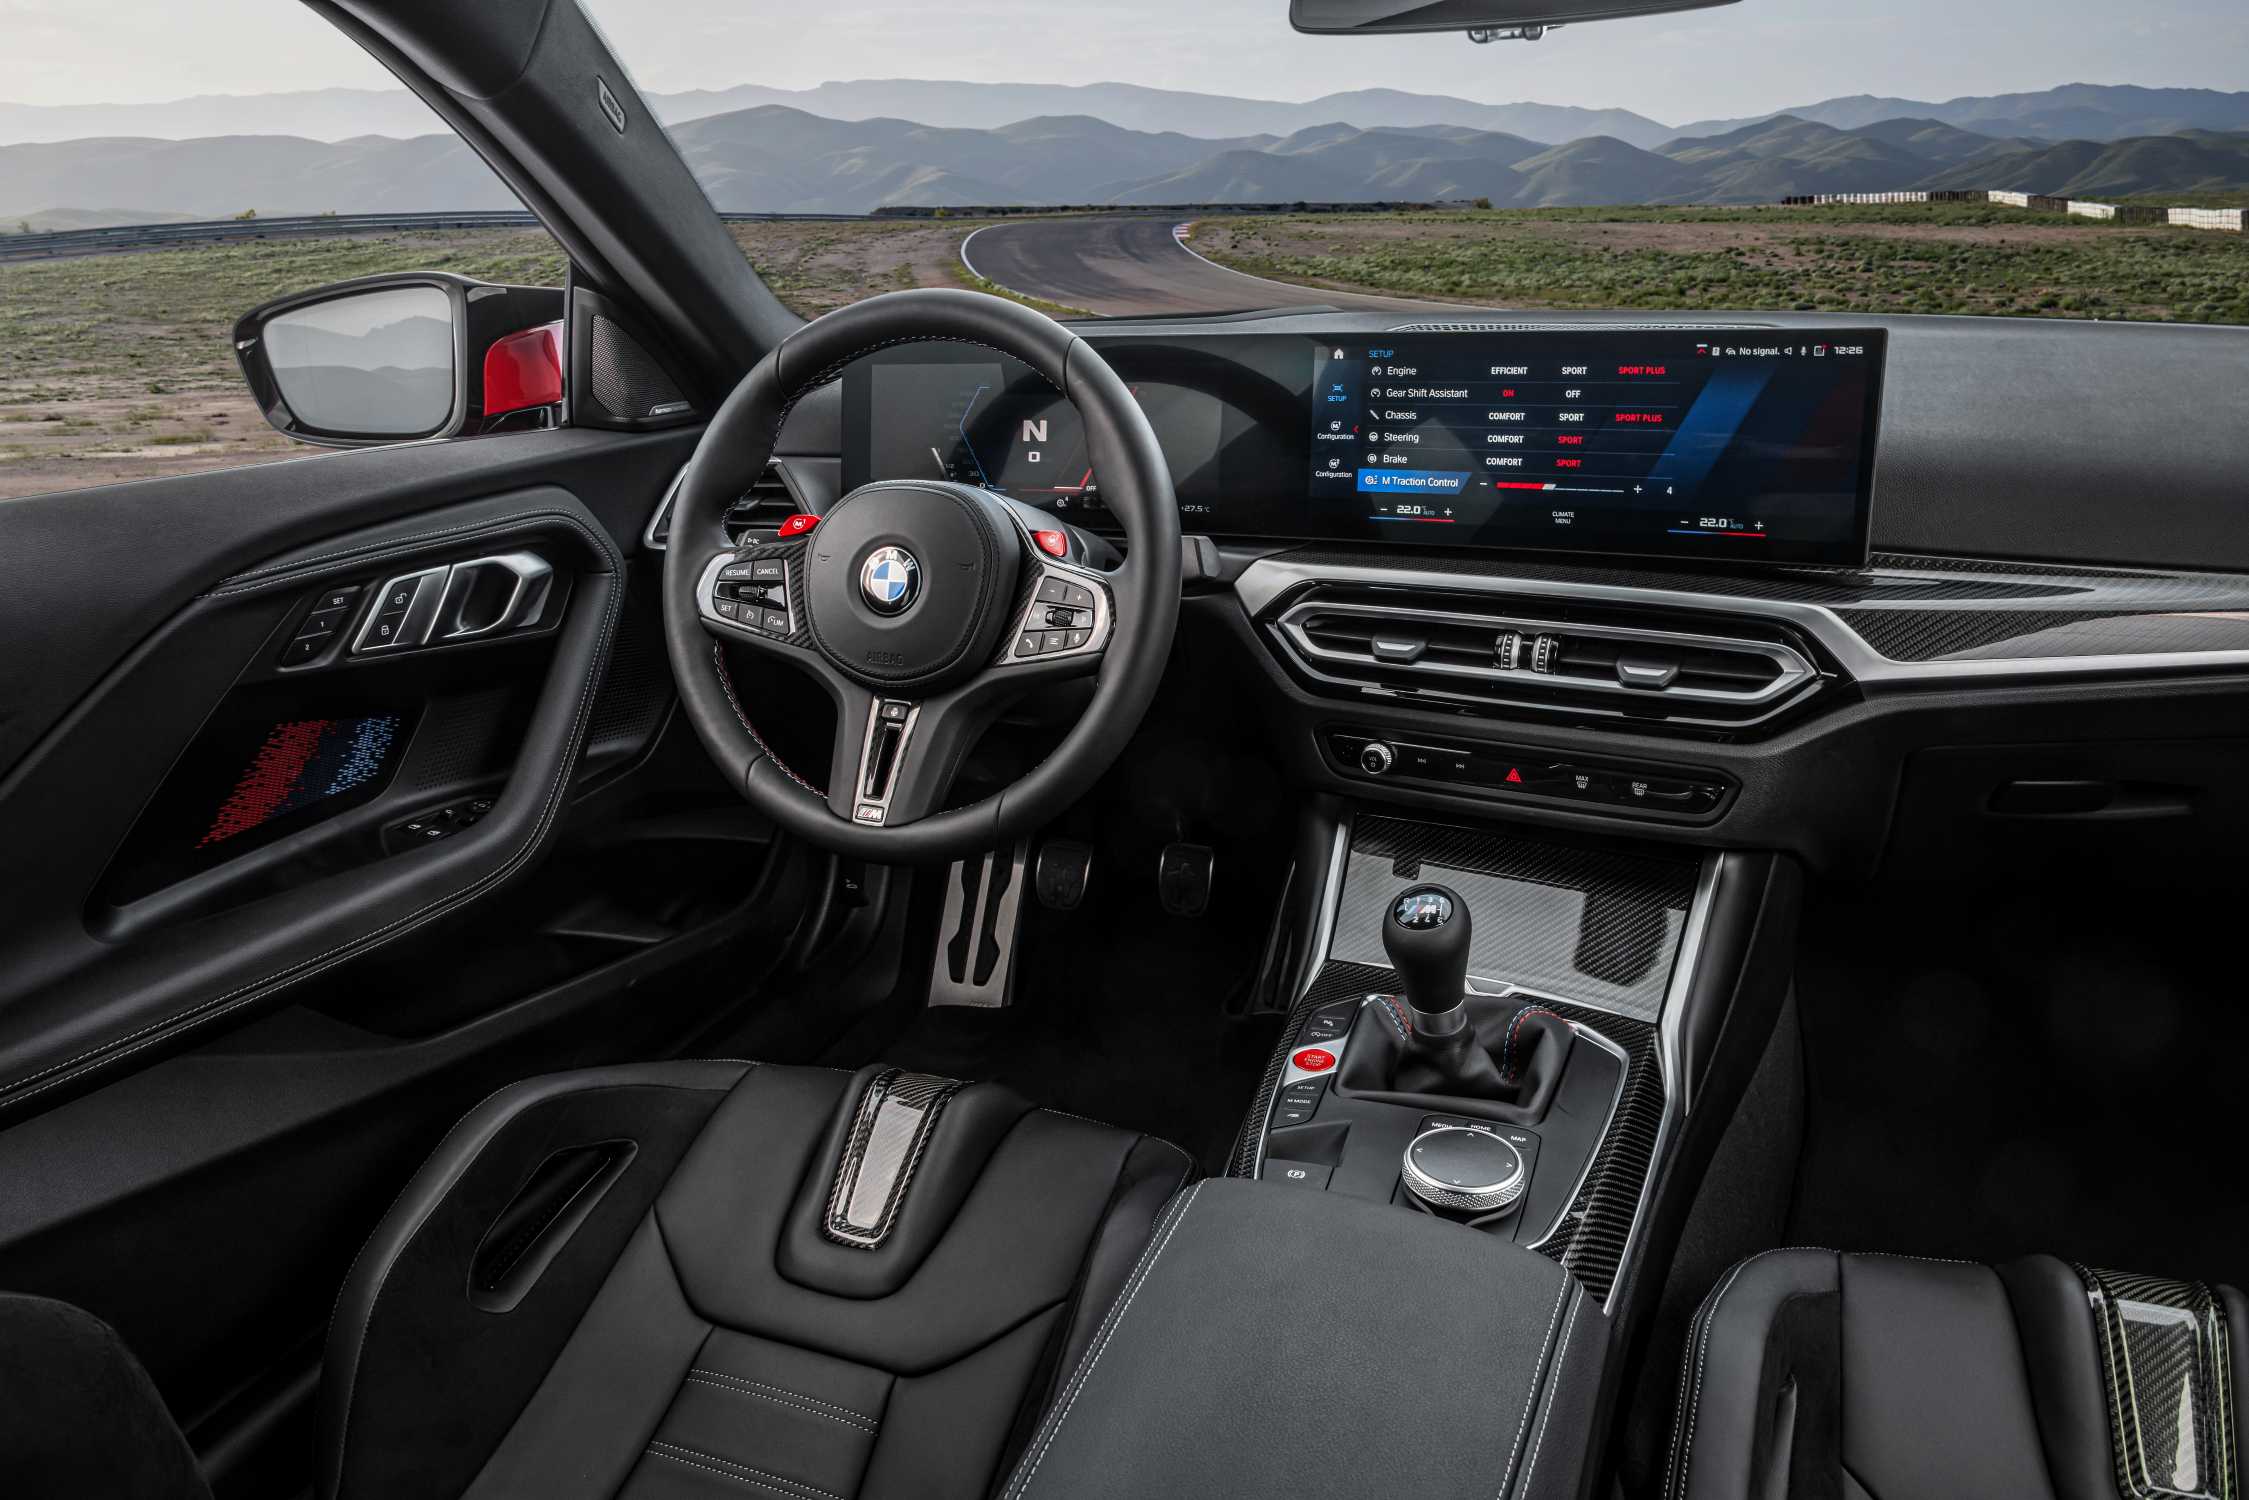 The allnew BMW M2 Interieur (10/2022).